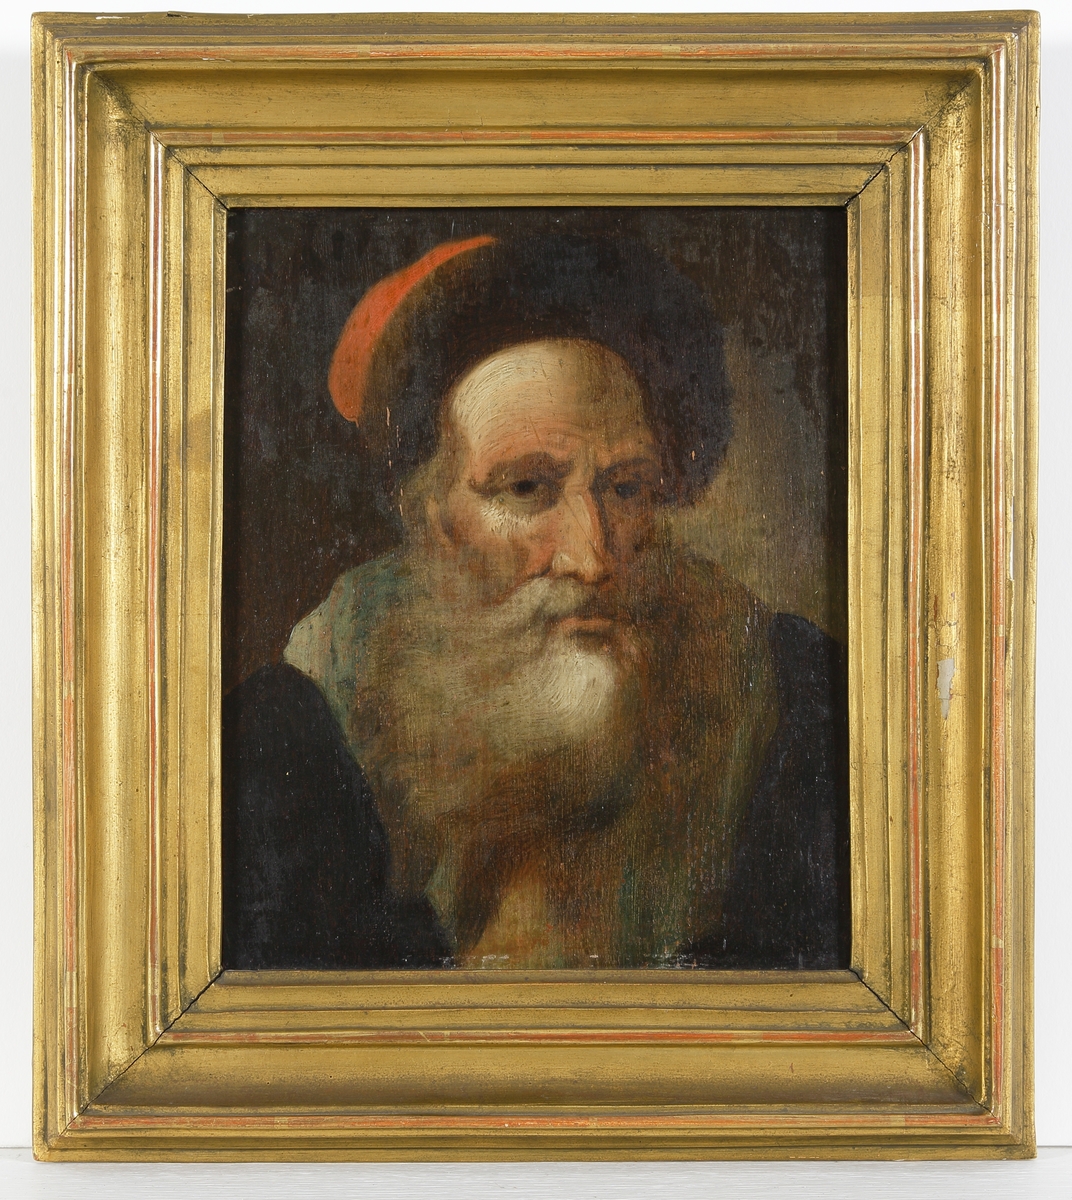 Oljemålning.
Porträtt av äldre man med skägg och svart och röd mössa.
Profilerad, förgylld ram.